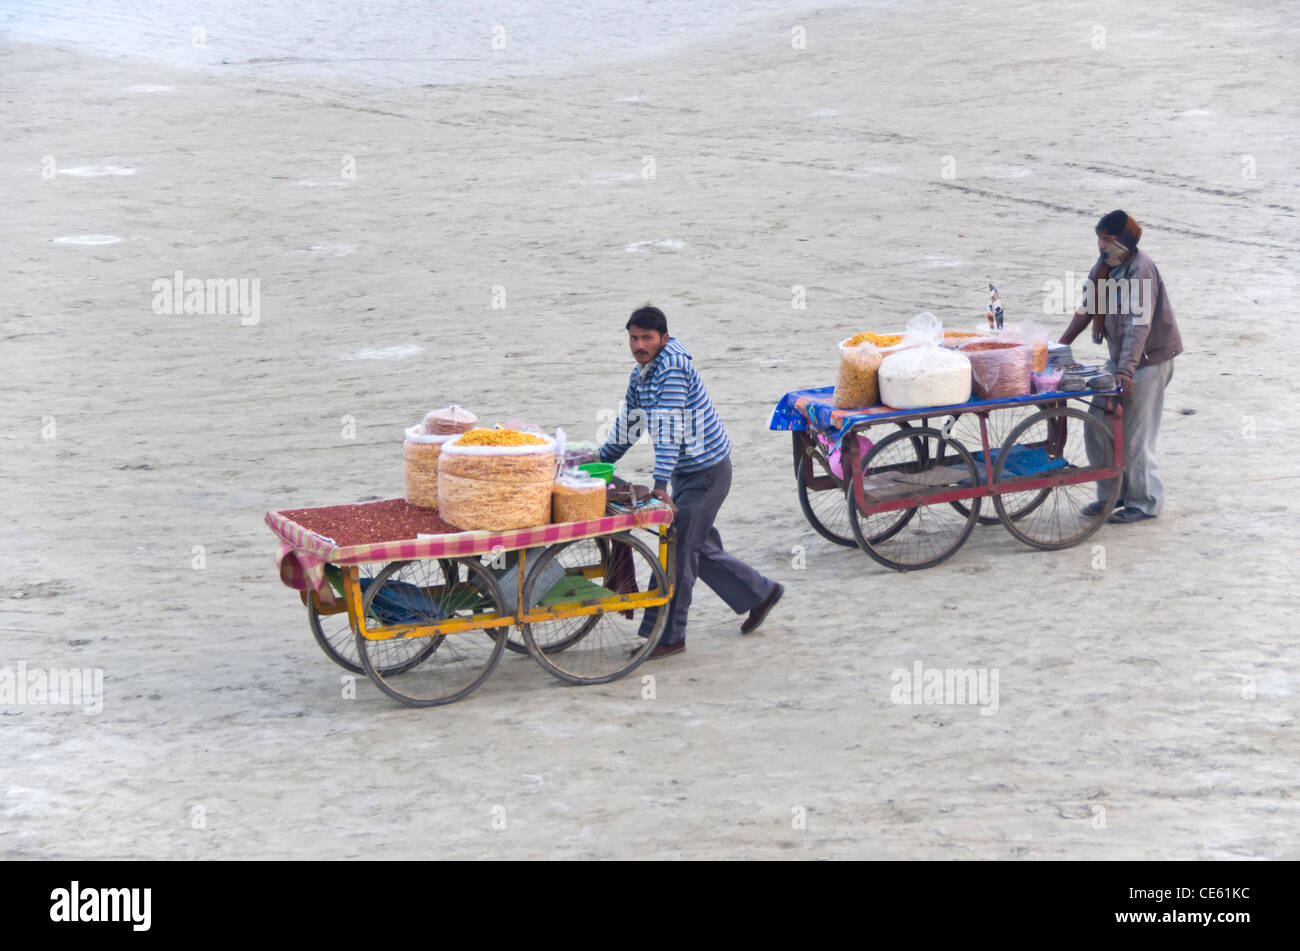 Deux colporteurs vendant des collations indiennes frit sur les rives du fleuve Ganga à l'occasion de Magh Mela, Allahabad Banque D'Images